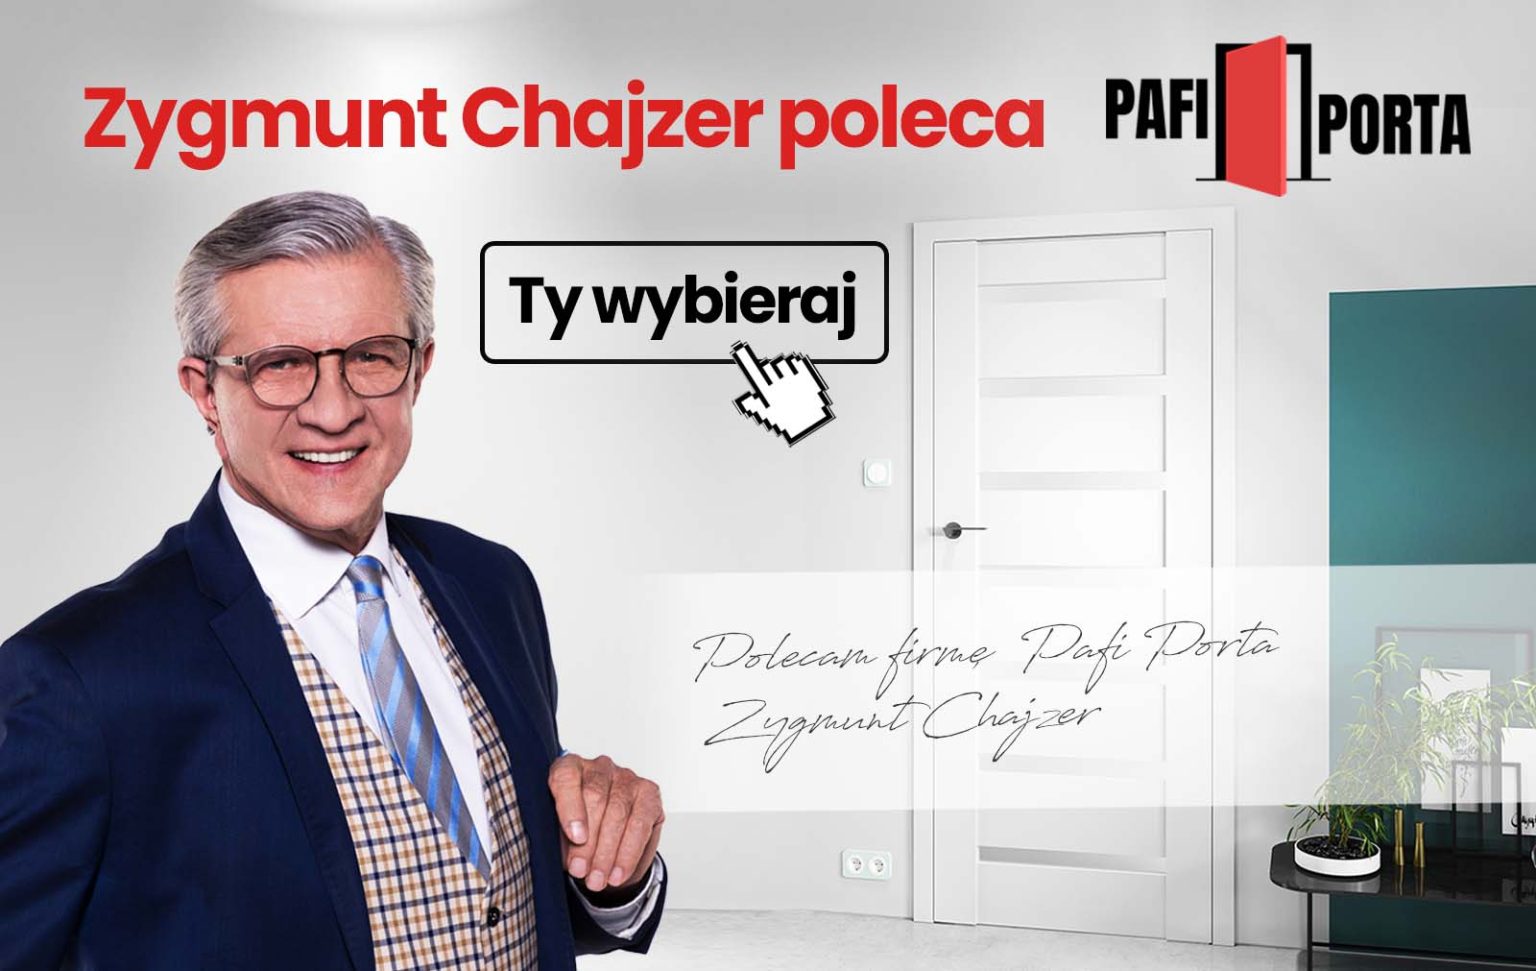 Zygmunt Hajzer poleca drzwi od Pafiportapl3